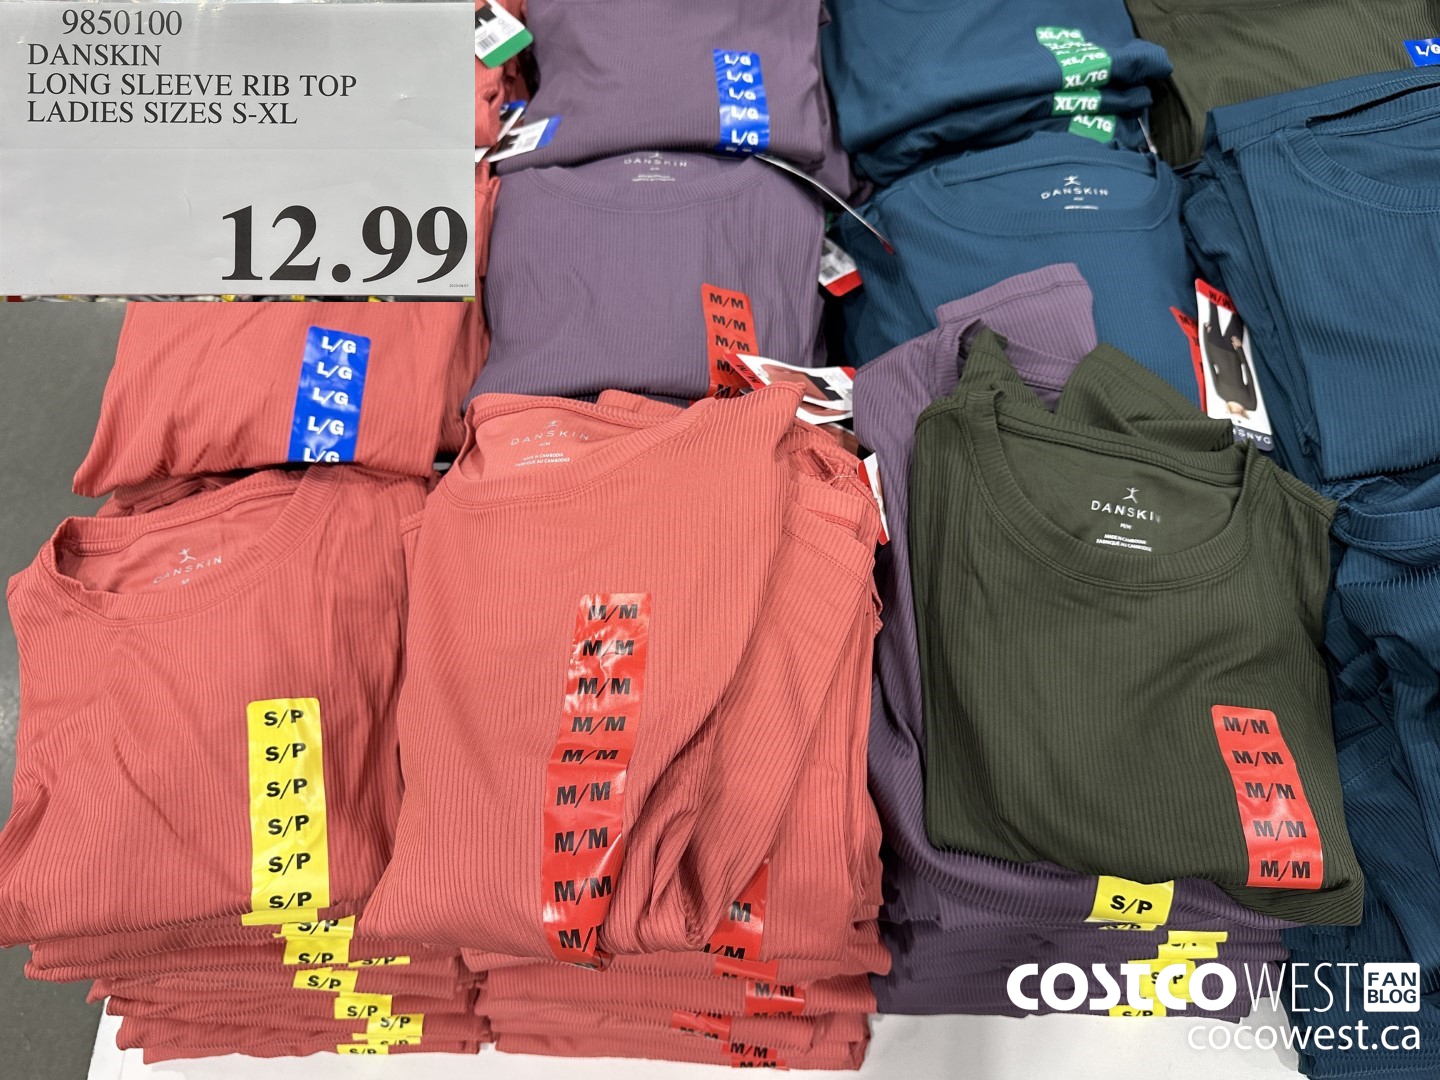 Costco Buys - Ladies, these Danskin leggings & sweatshirts